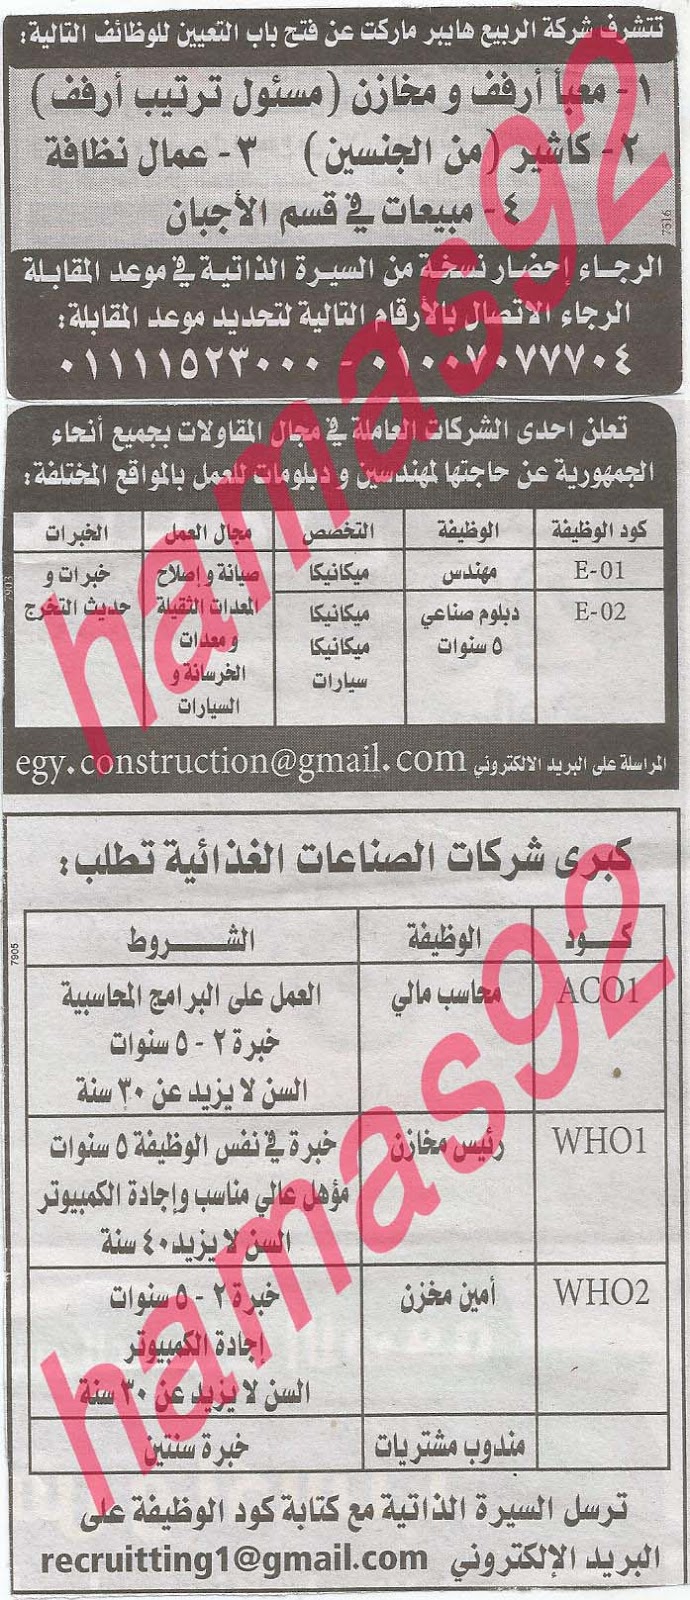 وظائف خالية فى جريدة الوسيط الاسكندرية السبت 24-08-2013 %D9%88+%D8%B3+%D8%B3+13